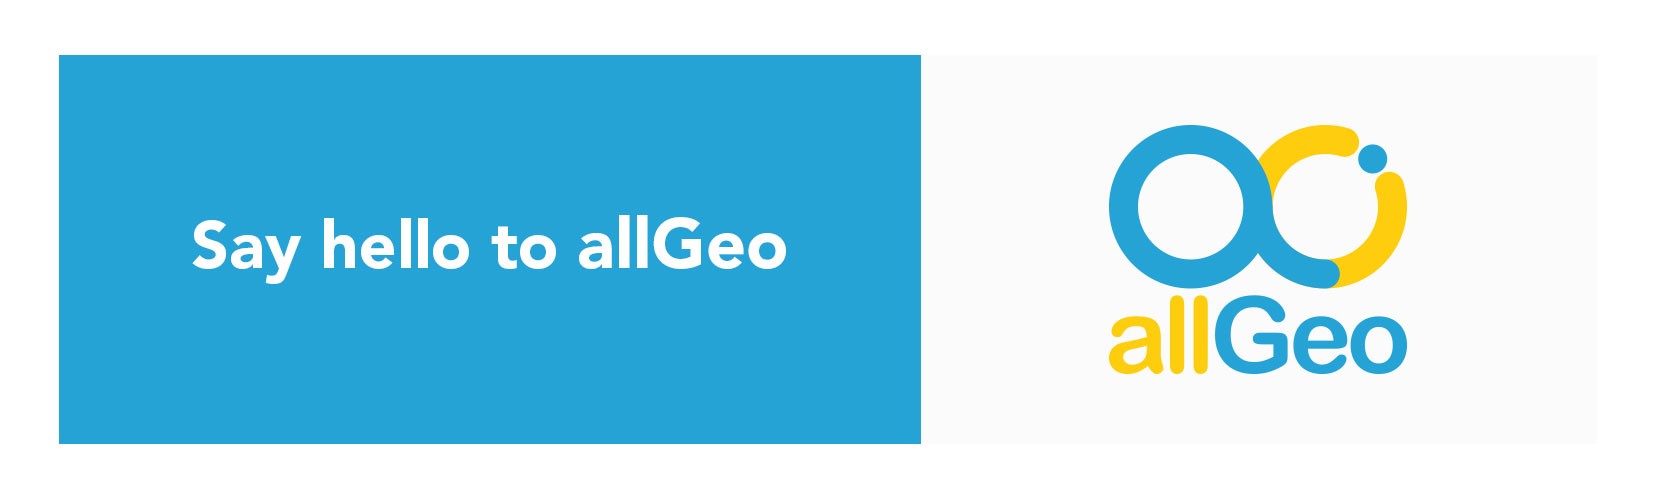 allGeo: Field Service Management & Optimization Service